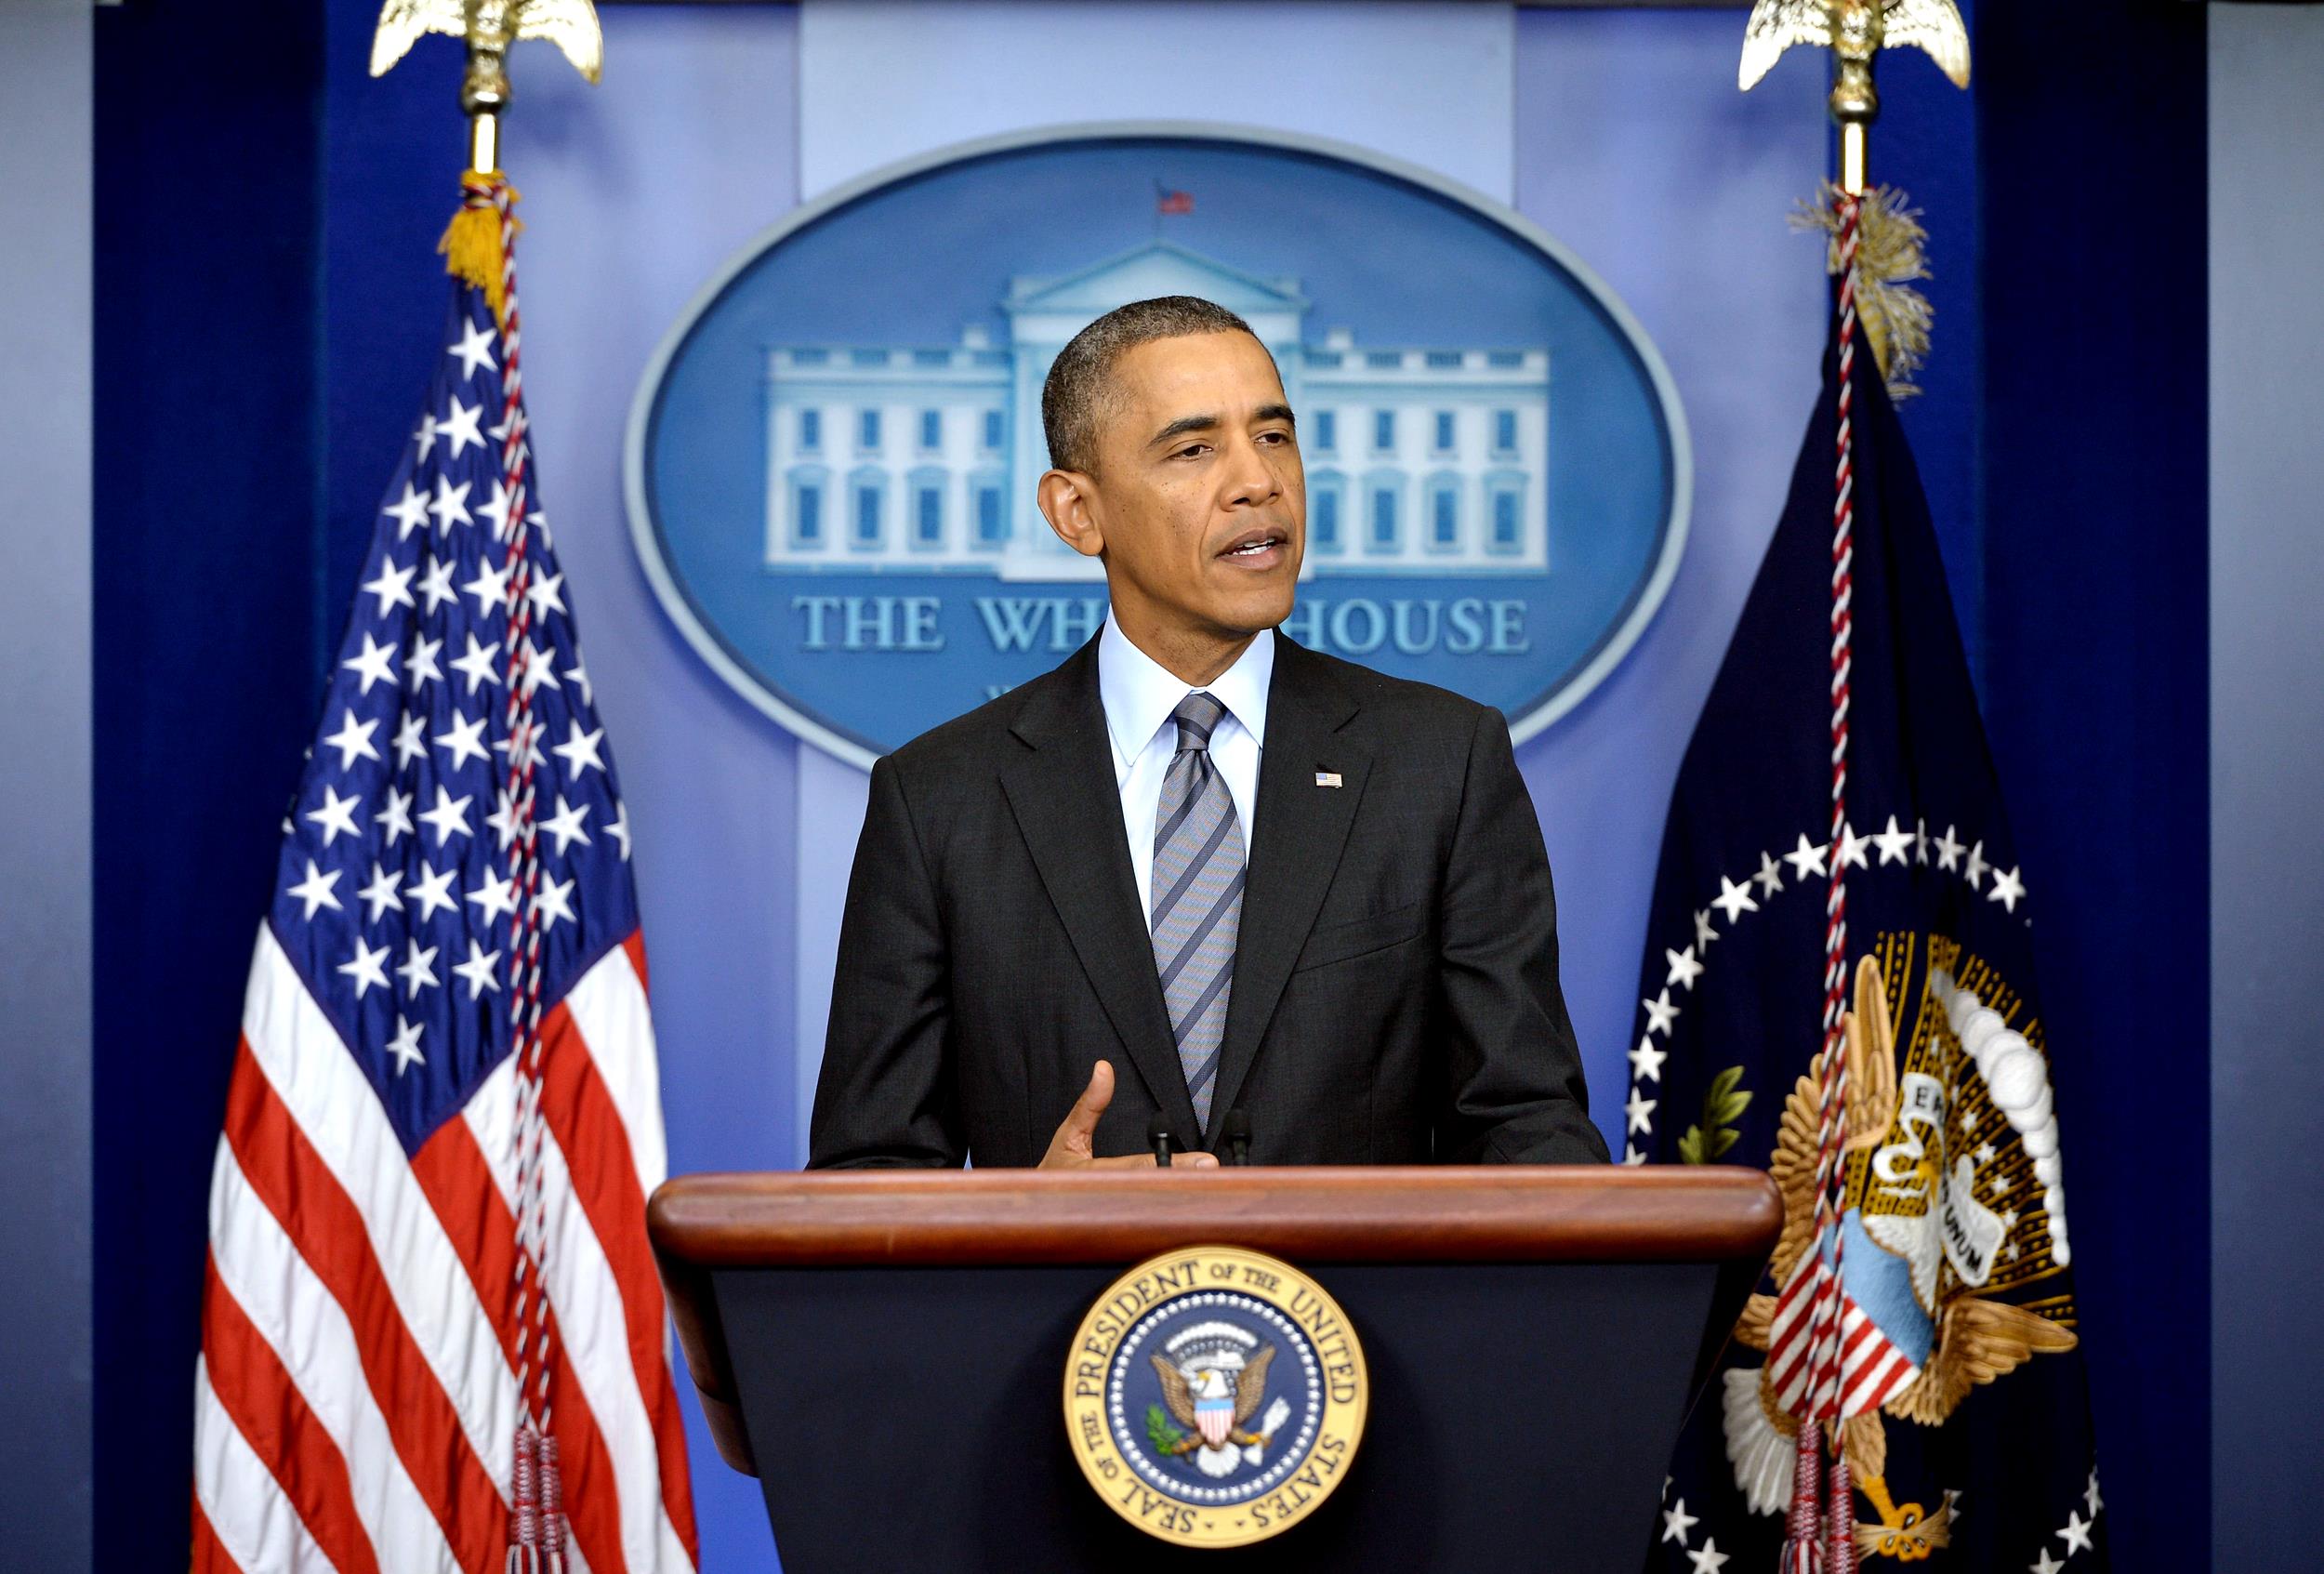 اوباما: شانسی واقعی برای توافقی راهگشا با ایران وجود دارد